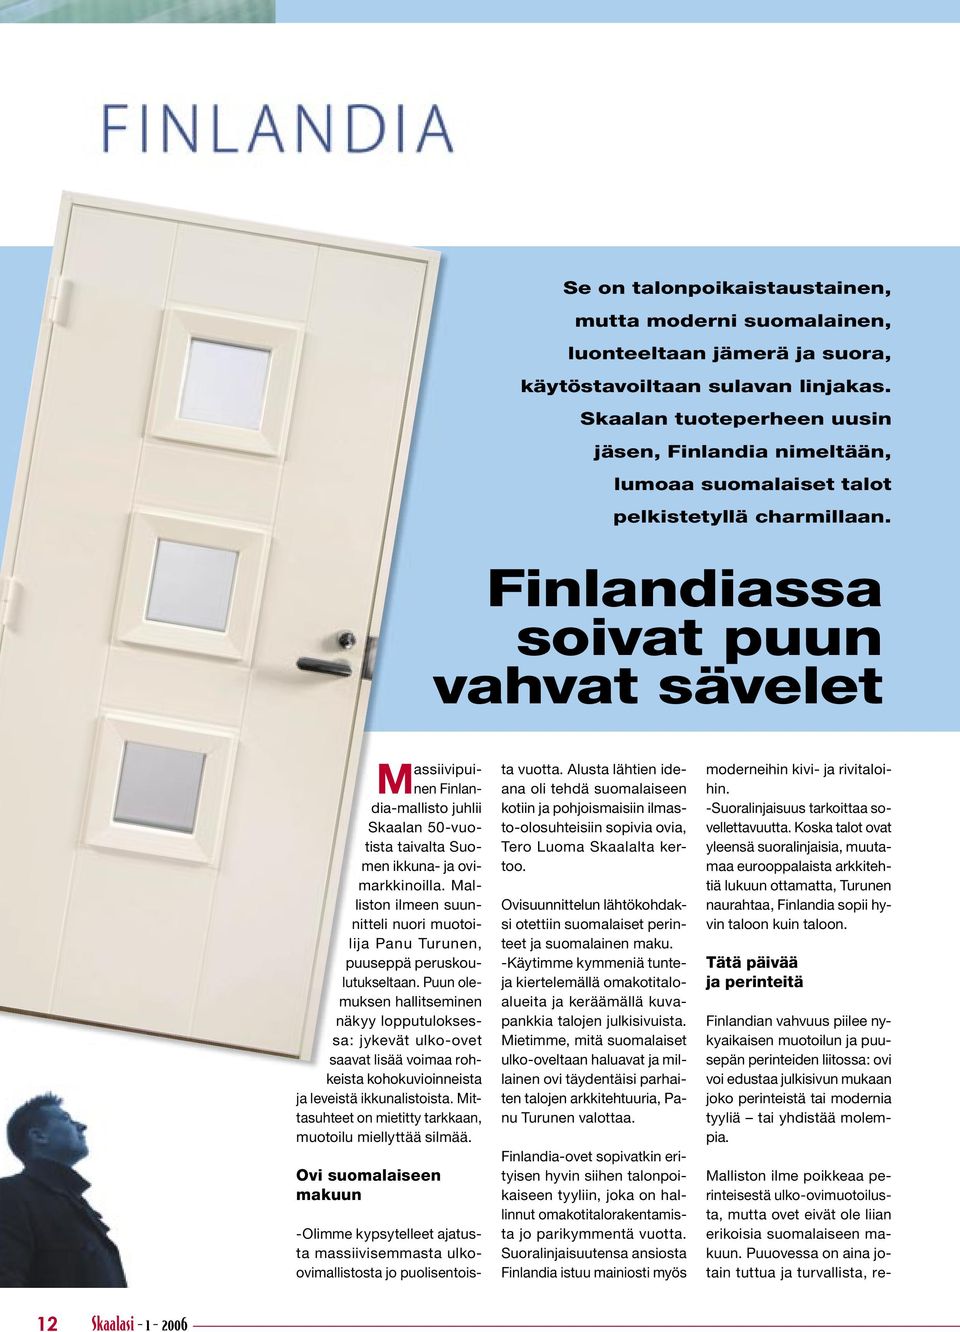 Malliston ilme poikkeaa perinteisestä ulko-ovimuotoilusta, mutta ovet eivät ole liian erikoisia suomalaiseen makuun.